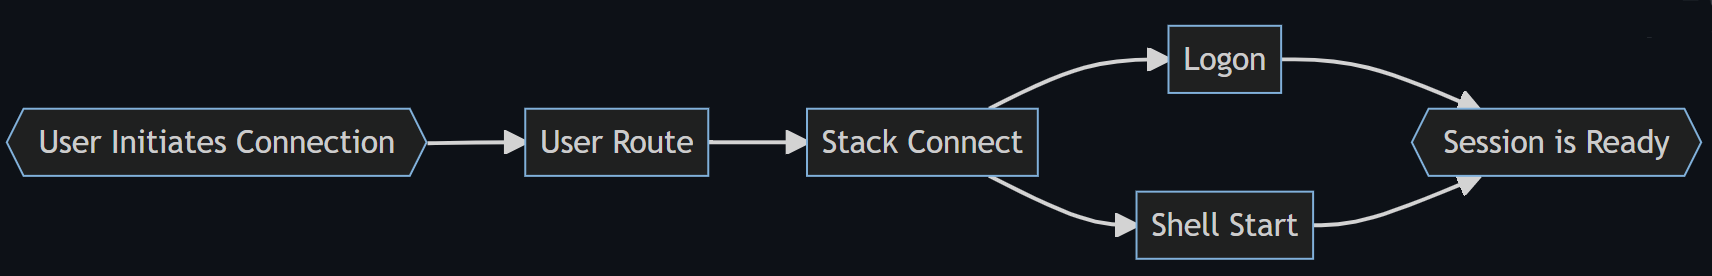 Vývojový diagram znázorňující čtyři fáze procesu přihlašování: Trasa uživatele, Stack Připojení ed, Logon a Shell Start to Shell Ready.